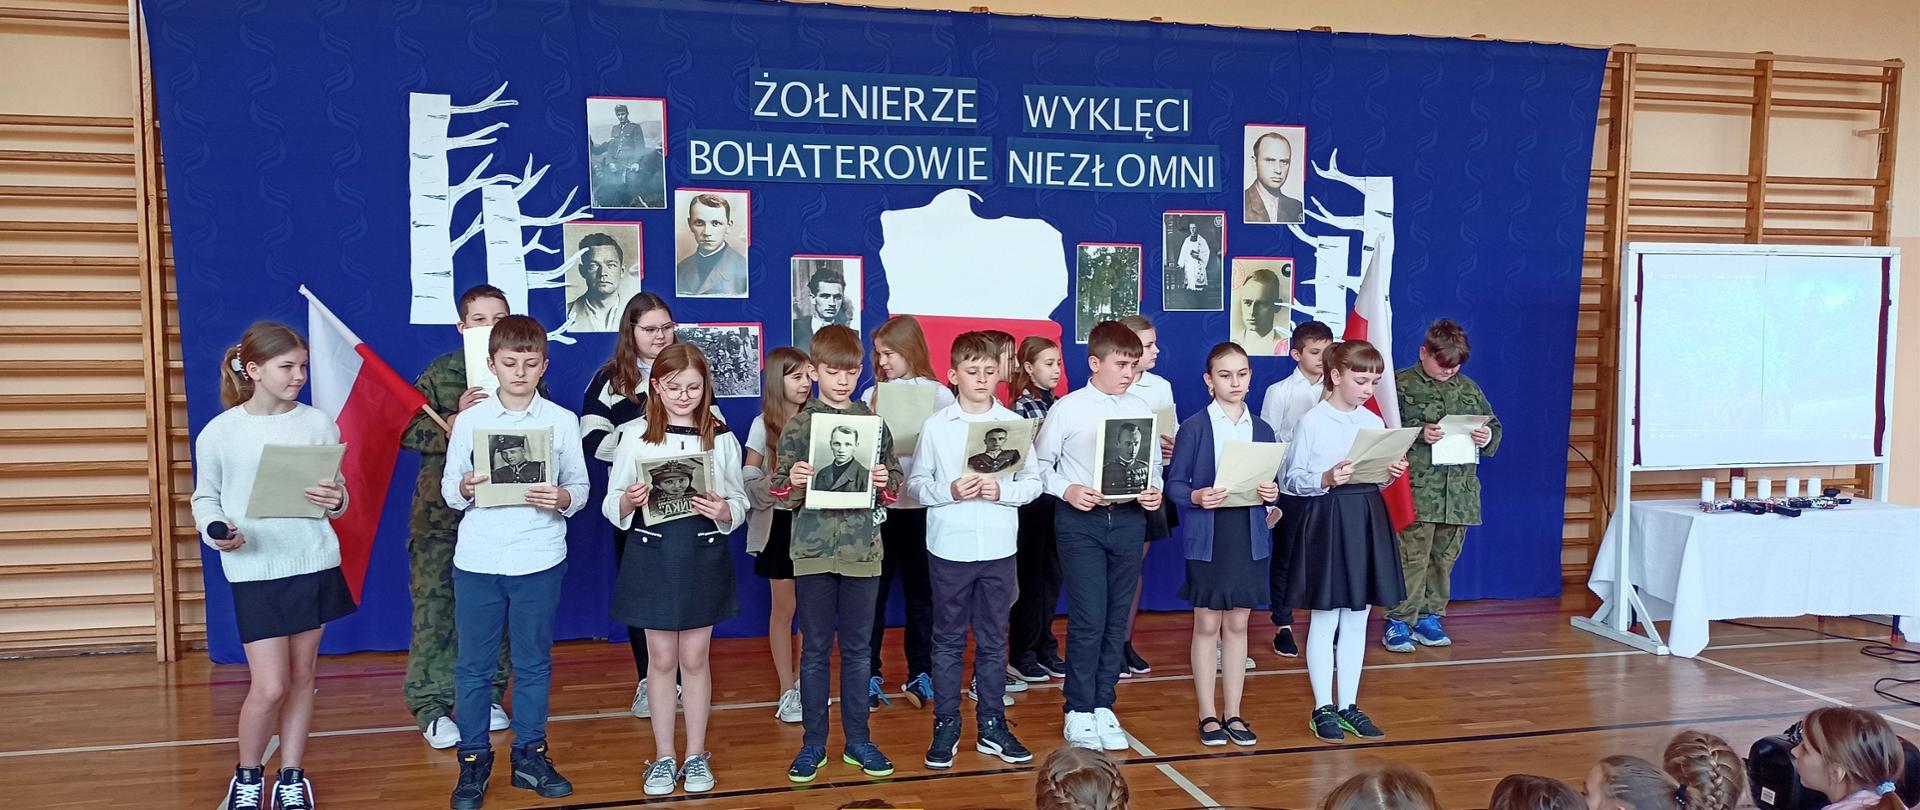 Uczniowie klasy piątej występują w akademii, trzymają w rękach zdjęcia przedstawiające żołnierzy wyklętych, ubrani są na galowo, stoją na tle granatowej dekoracji z mapą Polski i zdjęciami żołnierzy wyklętych